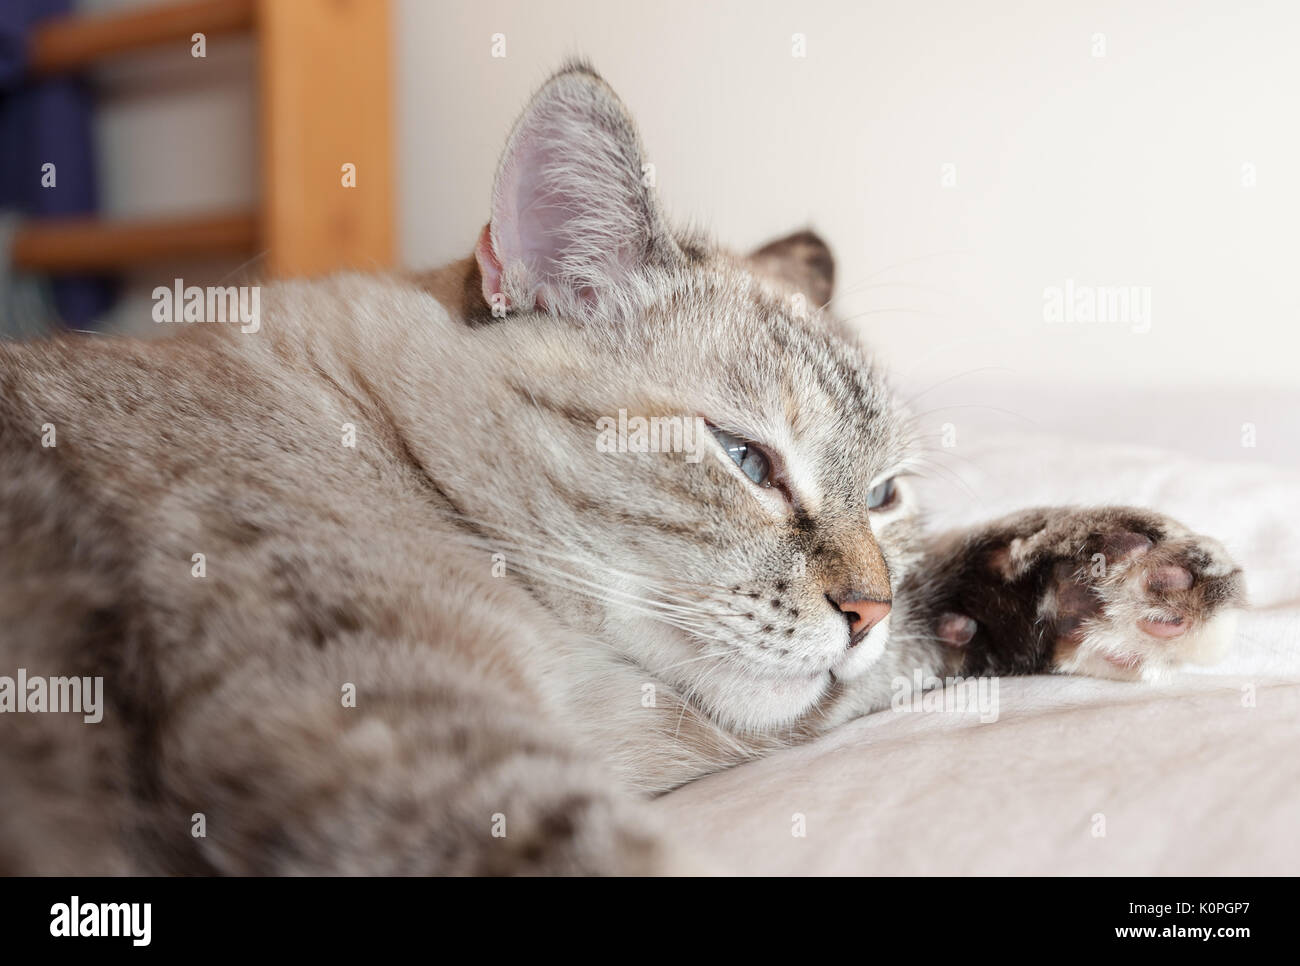 Ritratto di tabby cat su brown plaid. Gatto europeo. Foto Stock